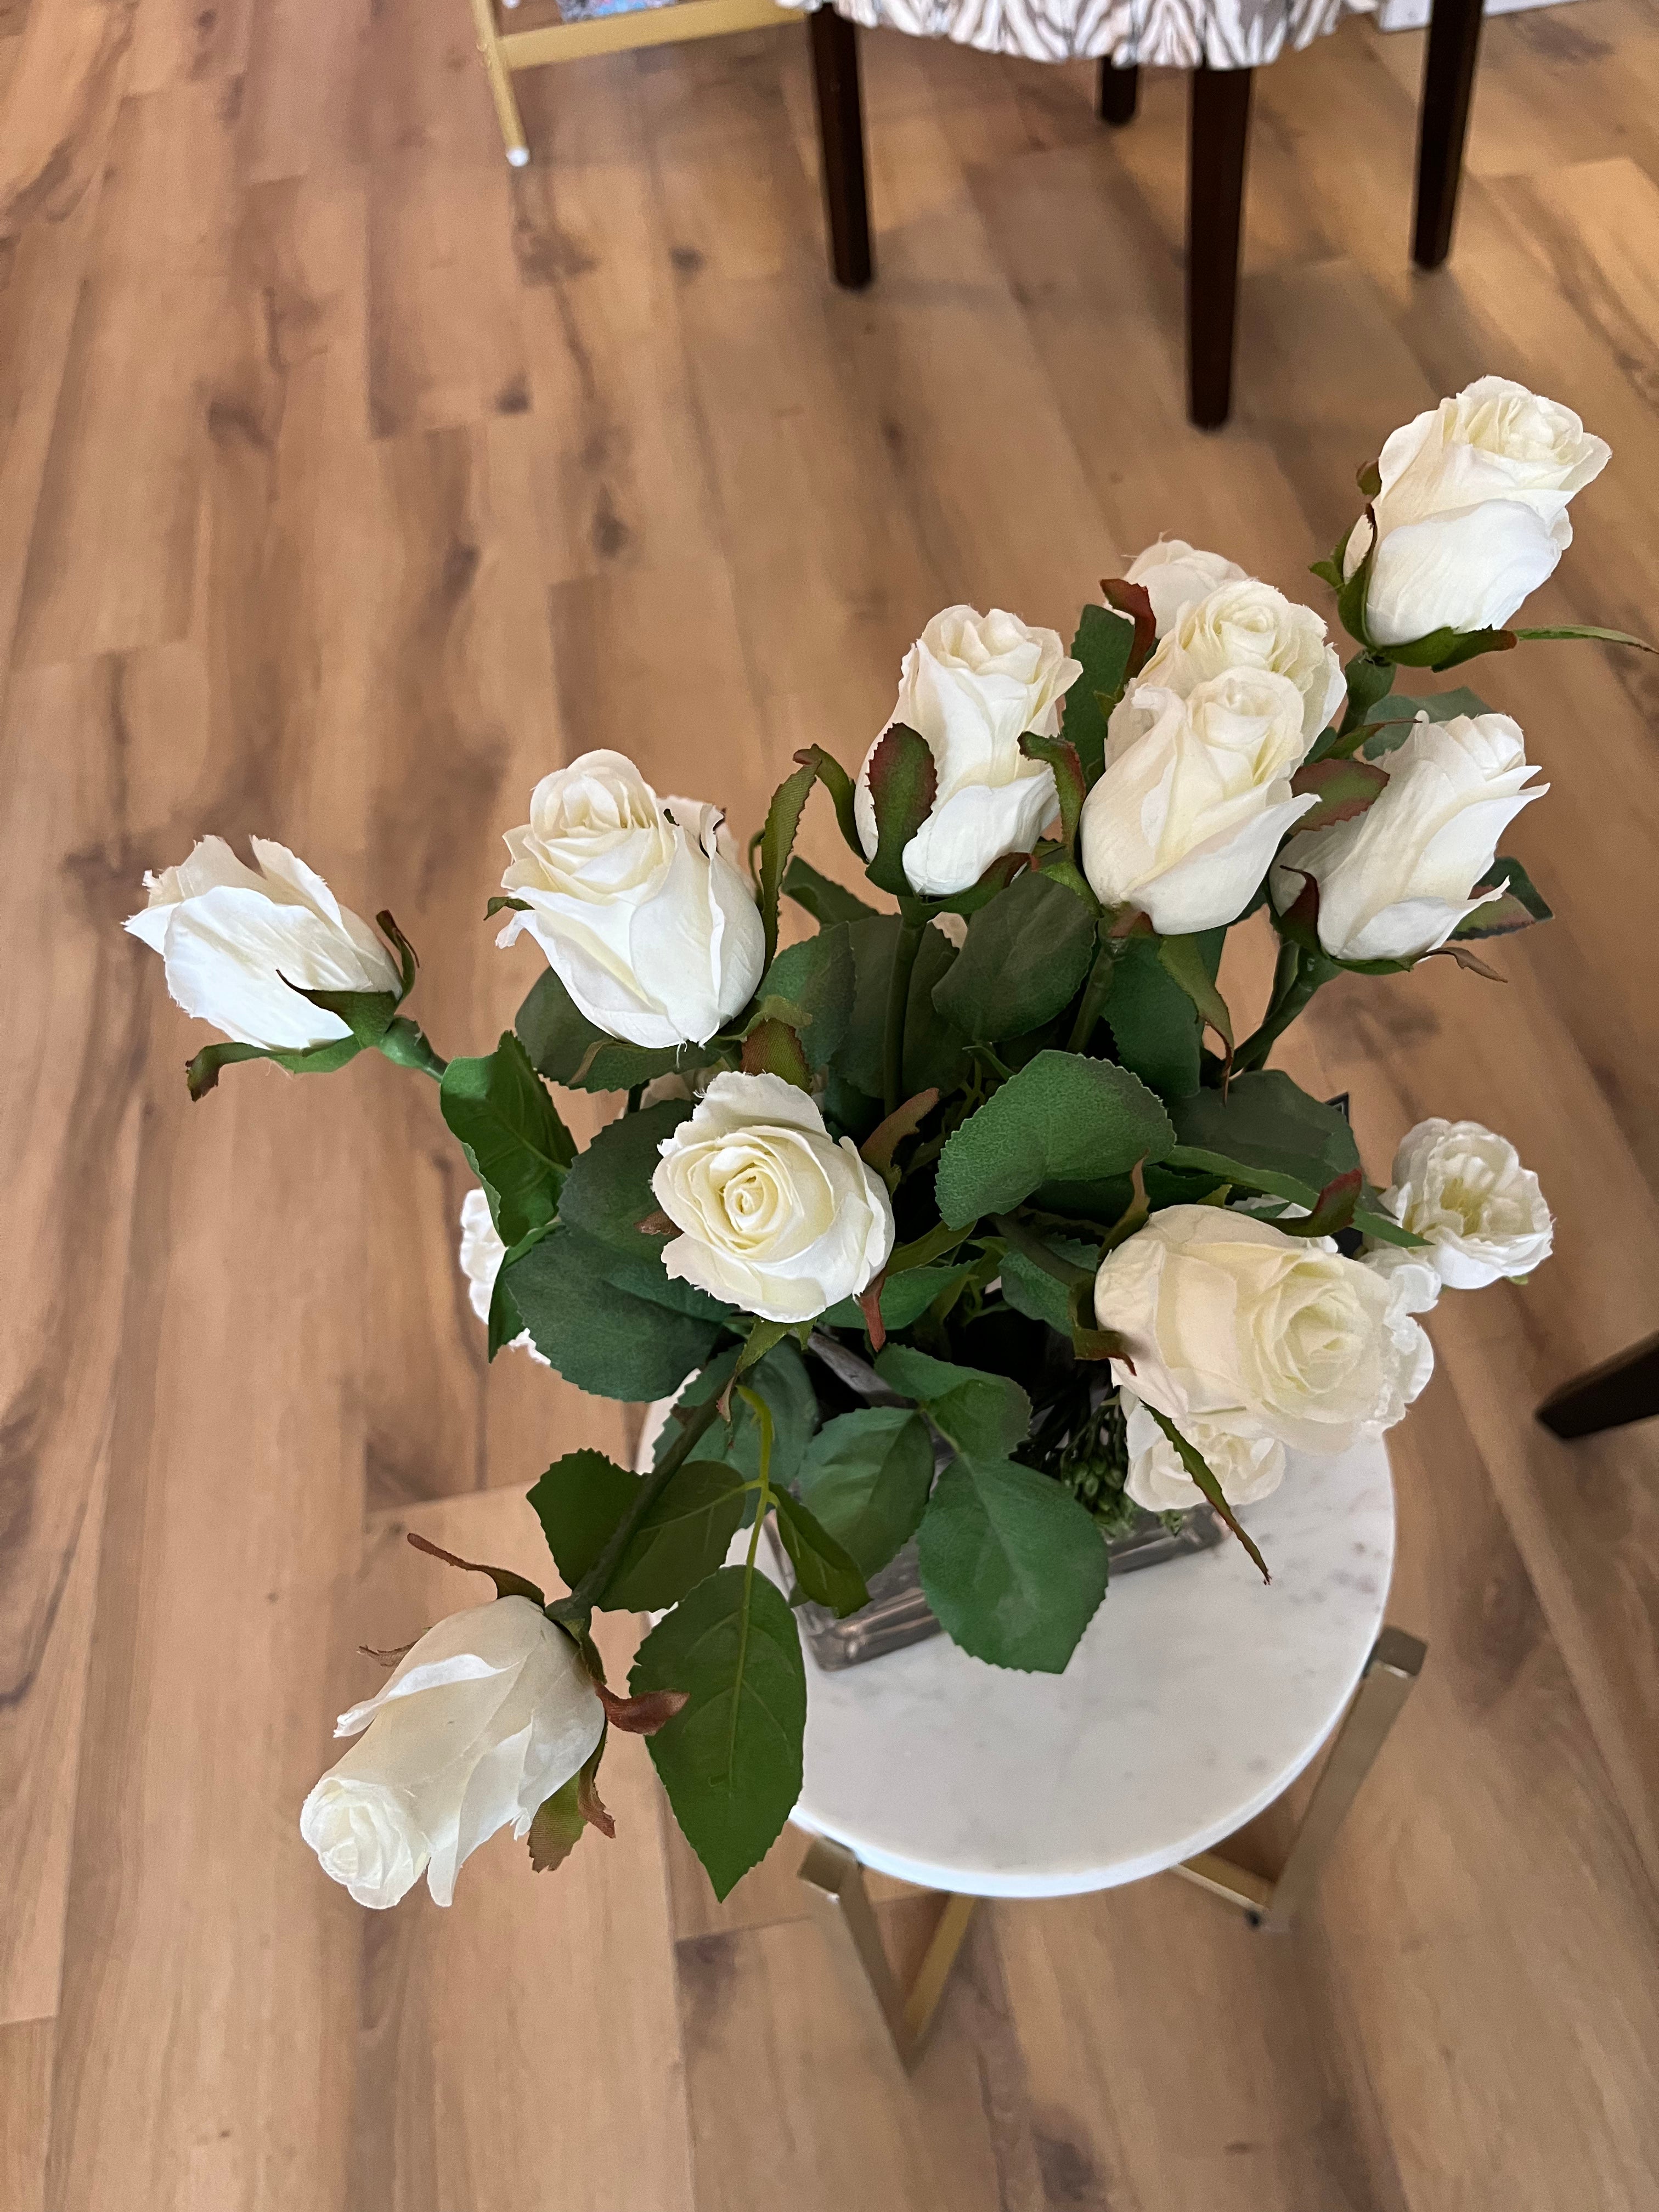 White Rose Arrangement in Glass Vase